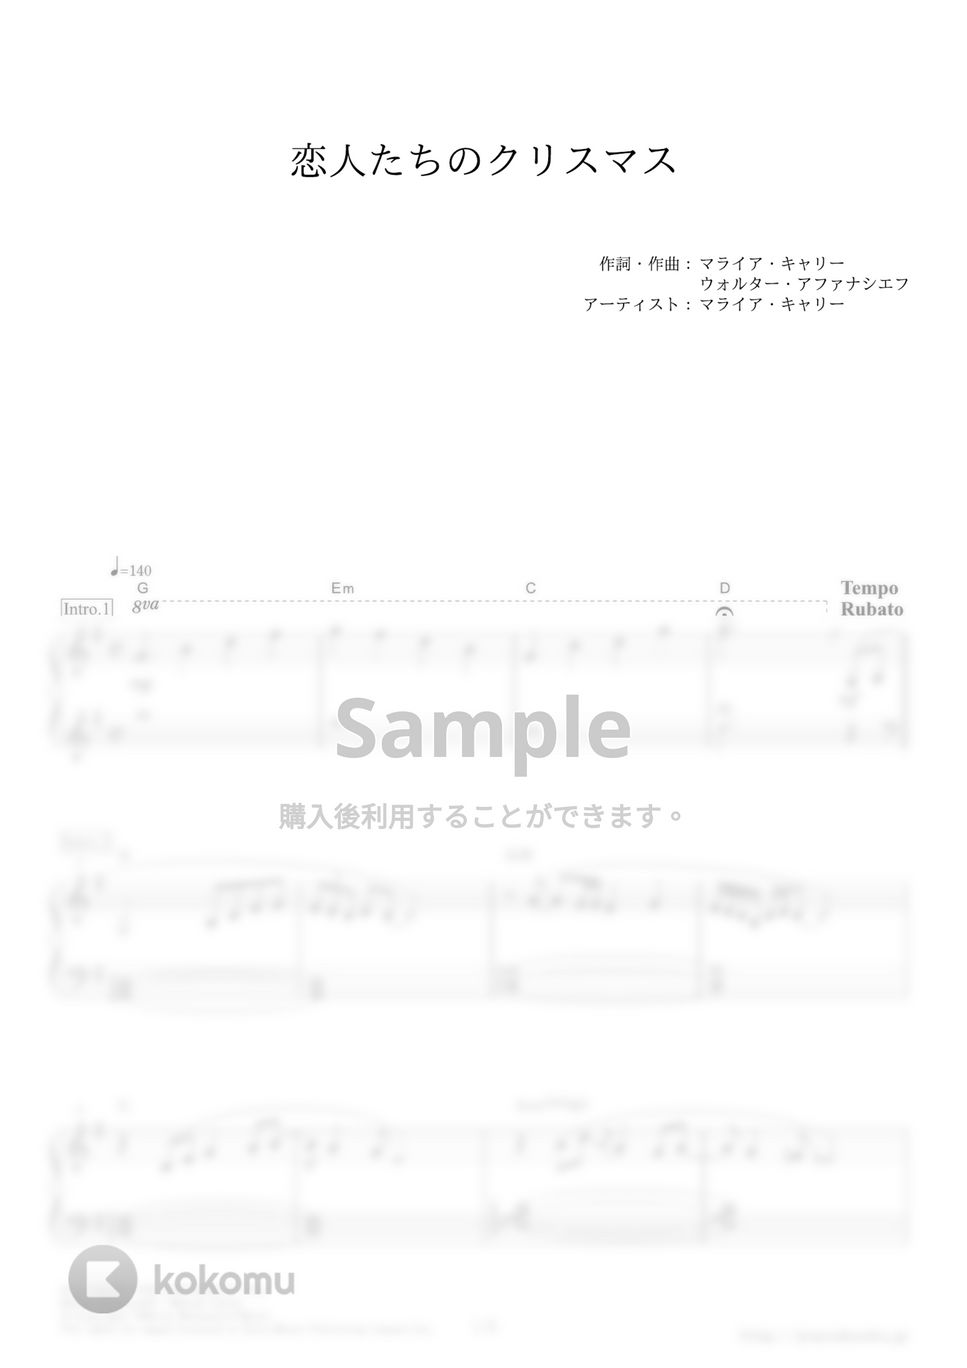 マライア・キャリー - 恋人たちのクリスマス (ドラマ『29歳のクリスマス』主題歌) by ピアノの本棚